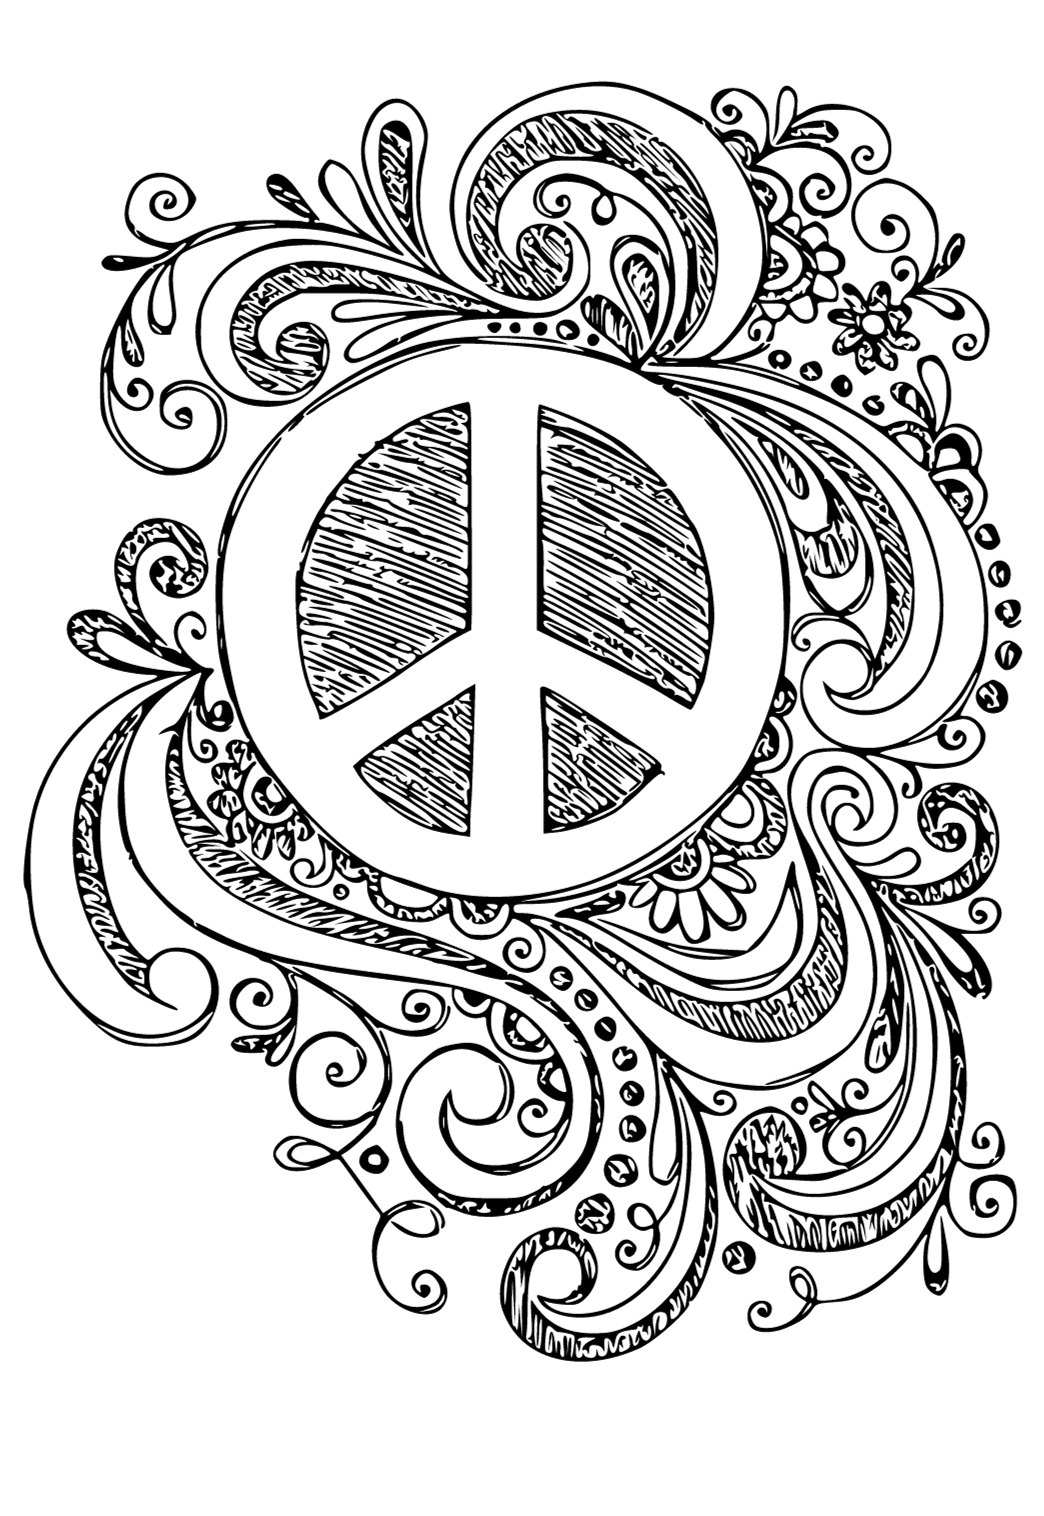 סמל השלום